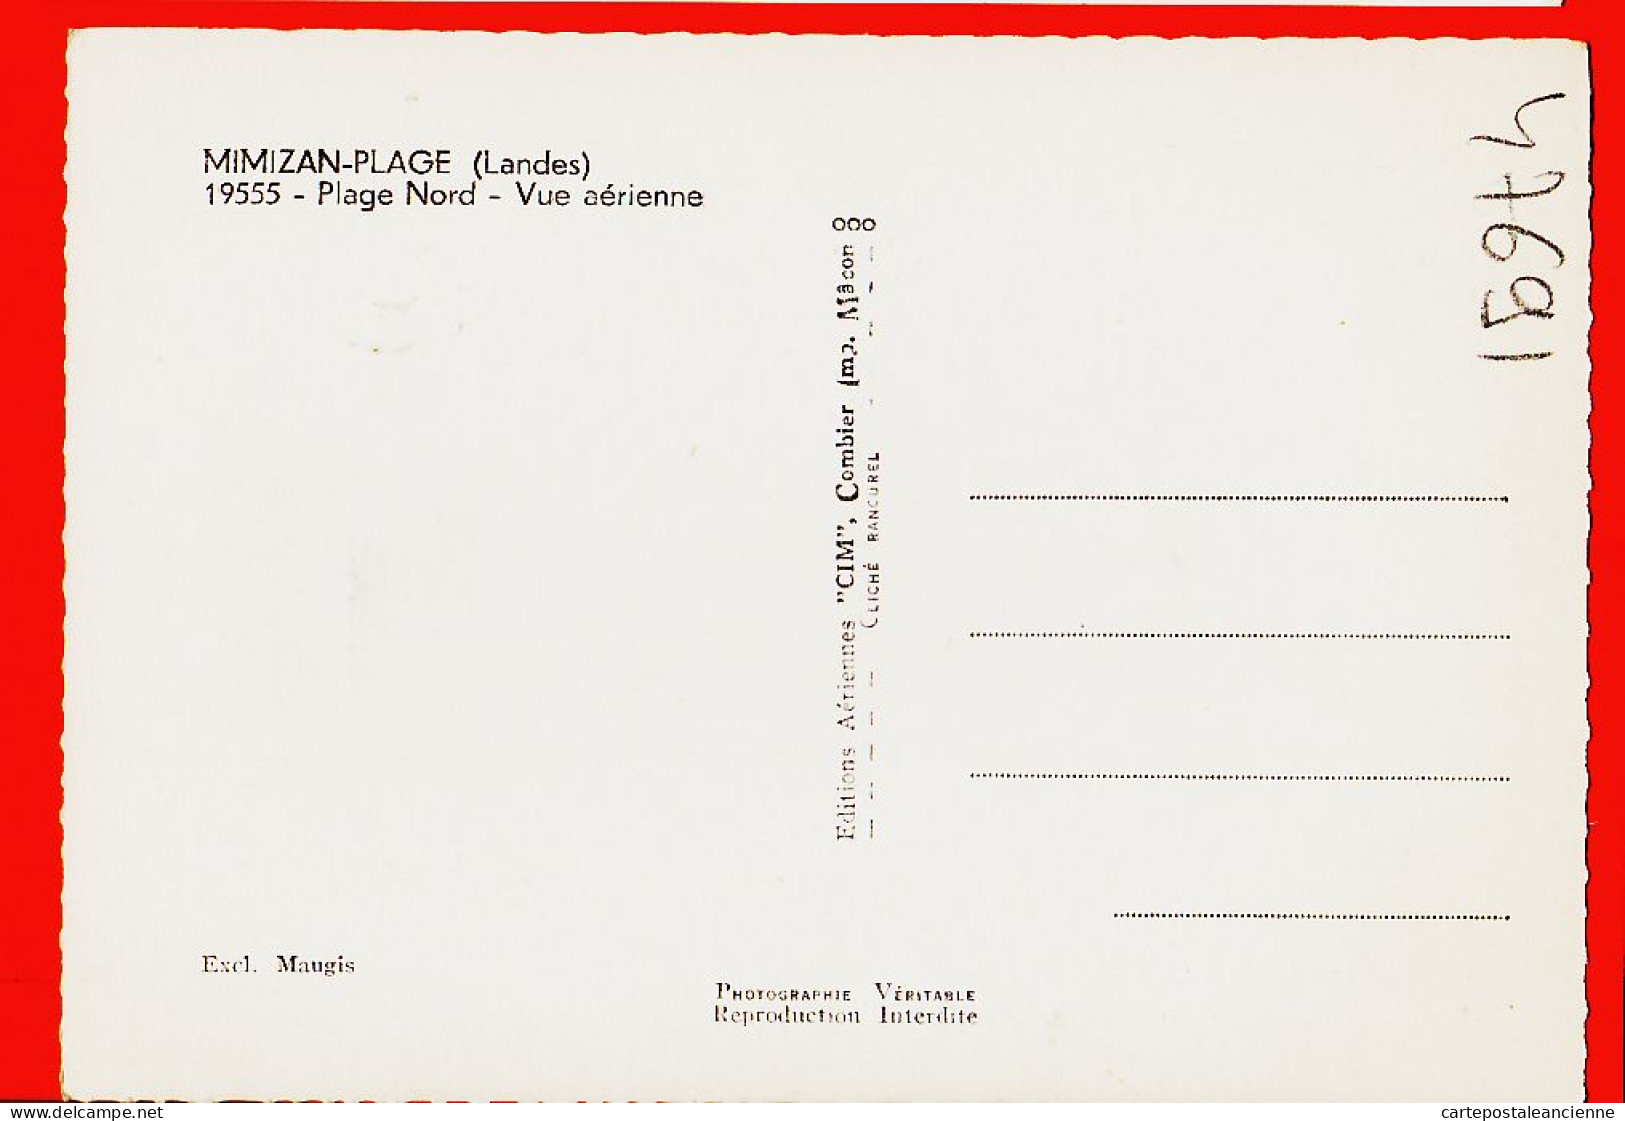 01342 / Peu Commun MIMIZAN-PLAGE 40-Landes Plage NORD Vue Aérienne 1950s Exclusivité MAUGIS Cliché RANCUREL Aérienne - Mimizan Plage